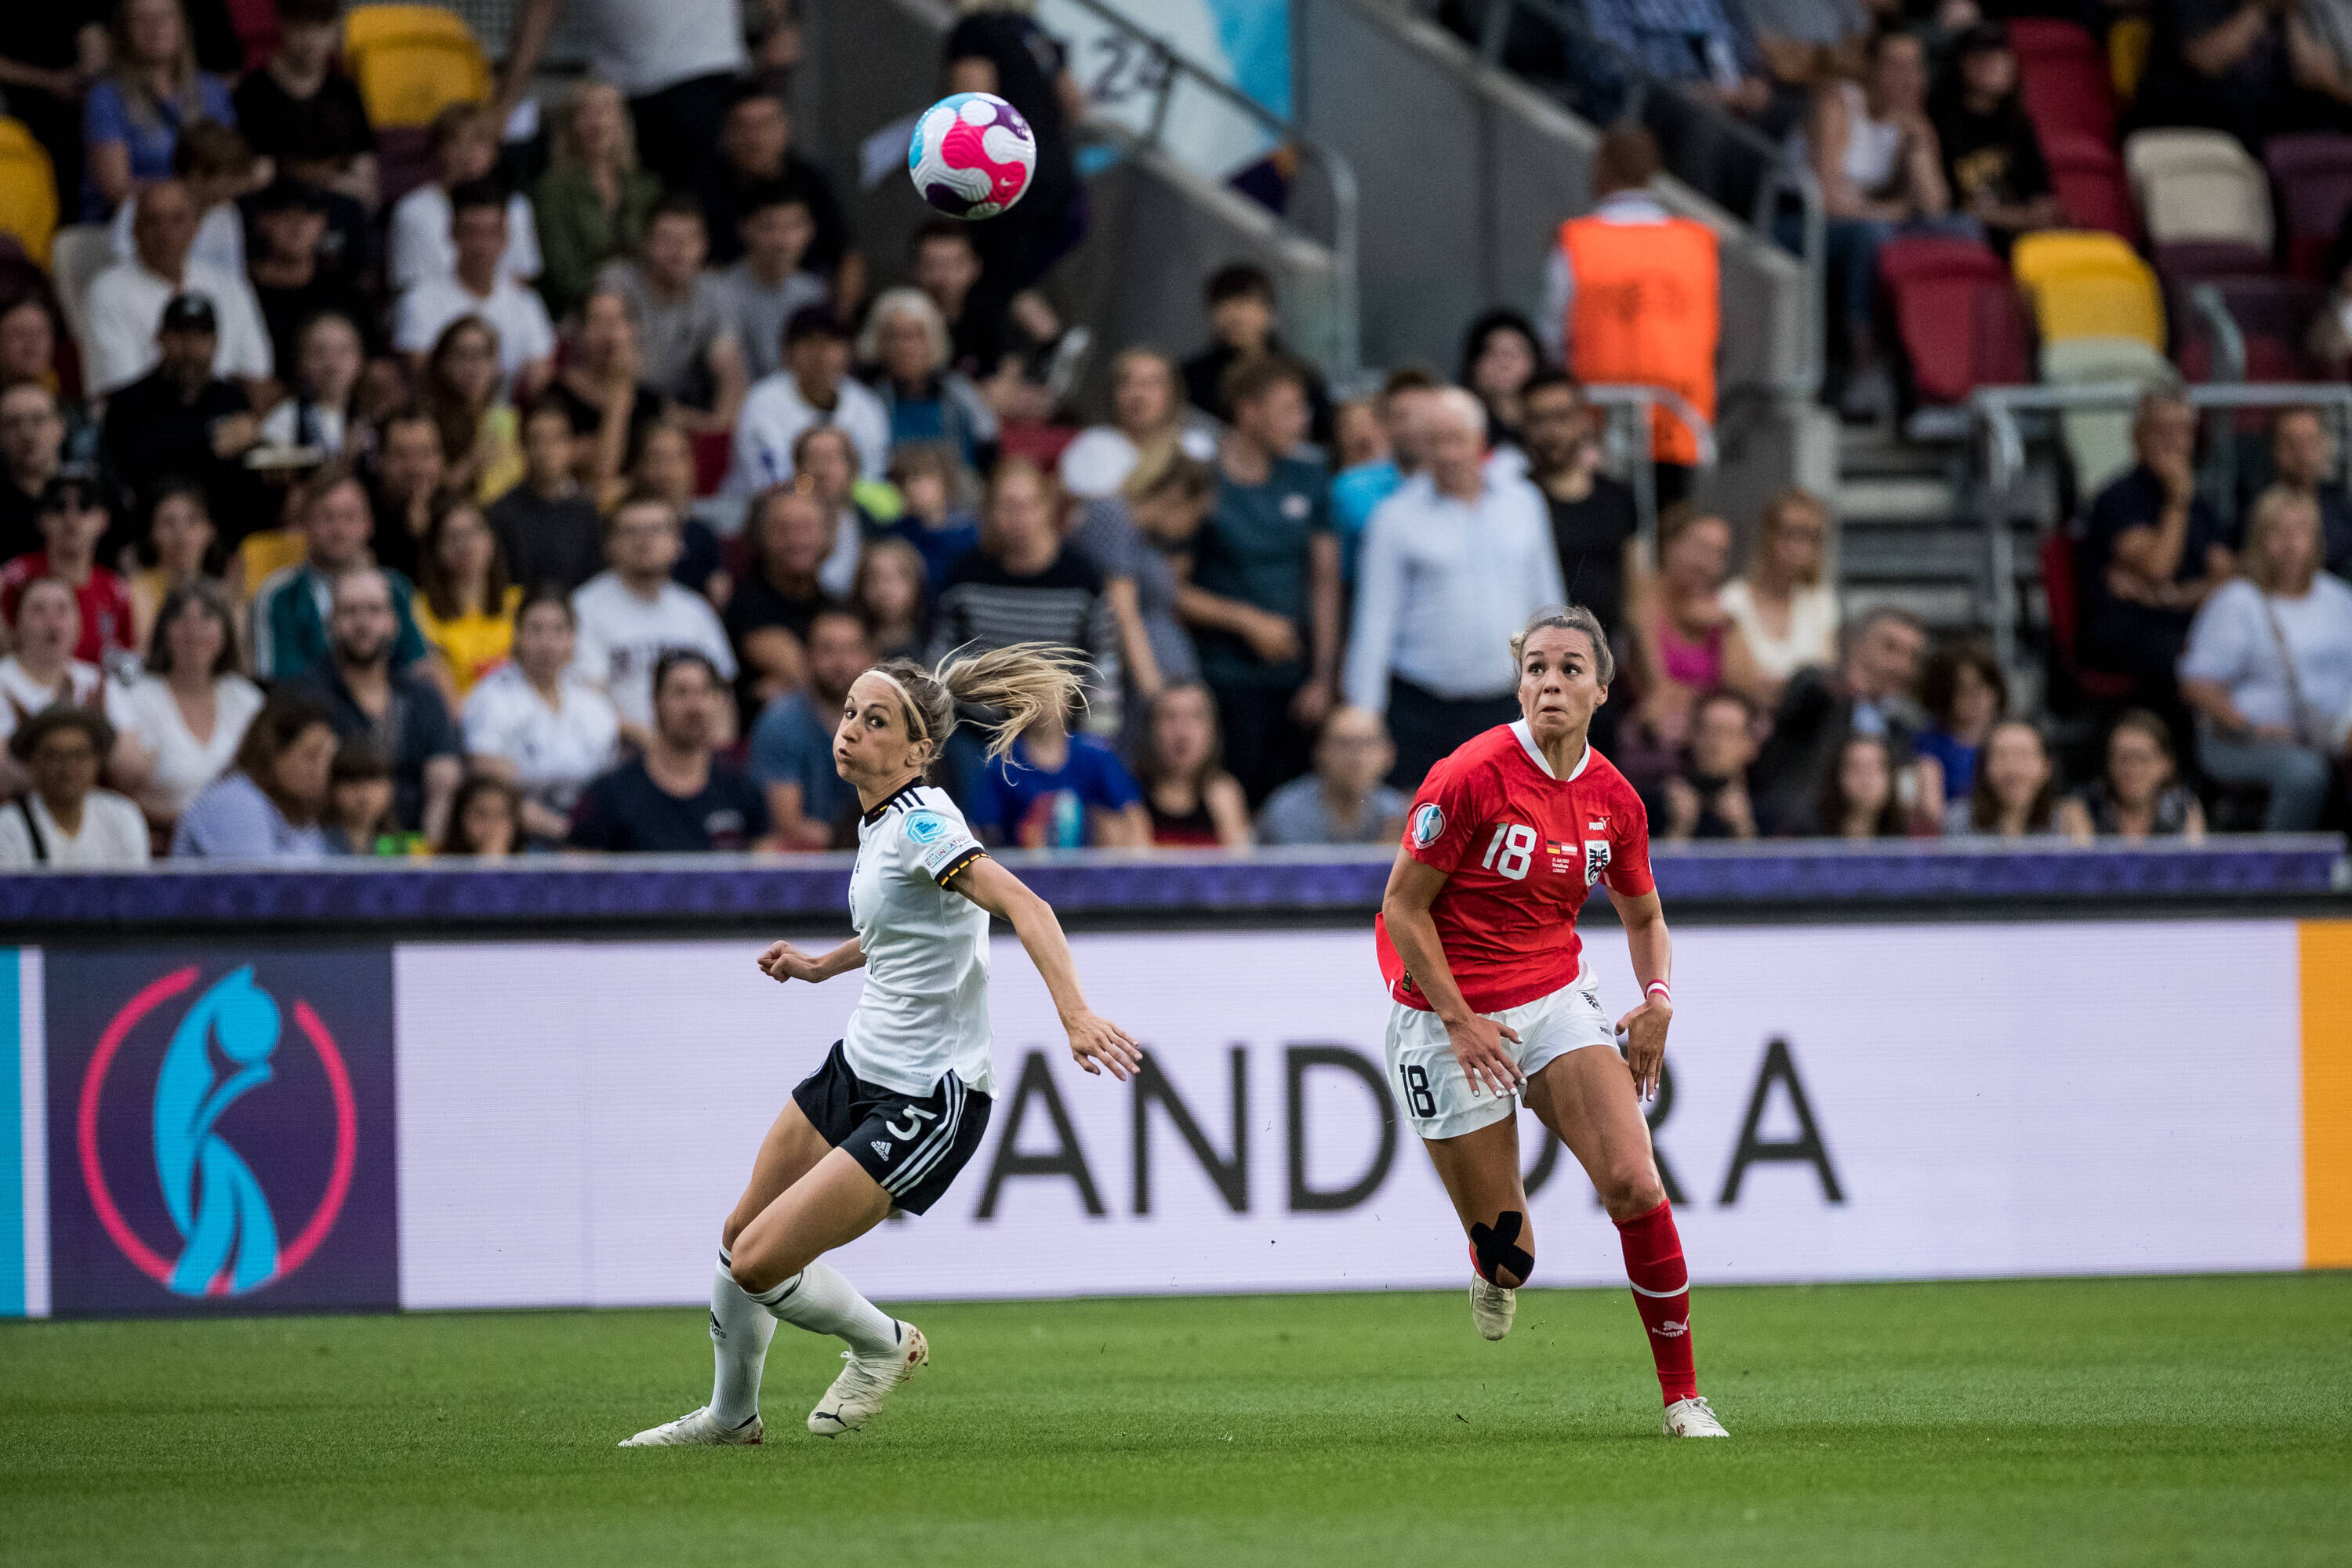 Kommentar zur Fußball-EM der Frauen - Ein neues Klischee vertieft den Kampf der Geschlechter